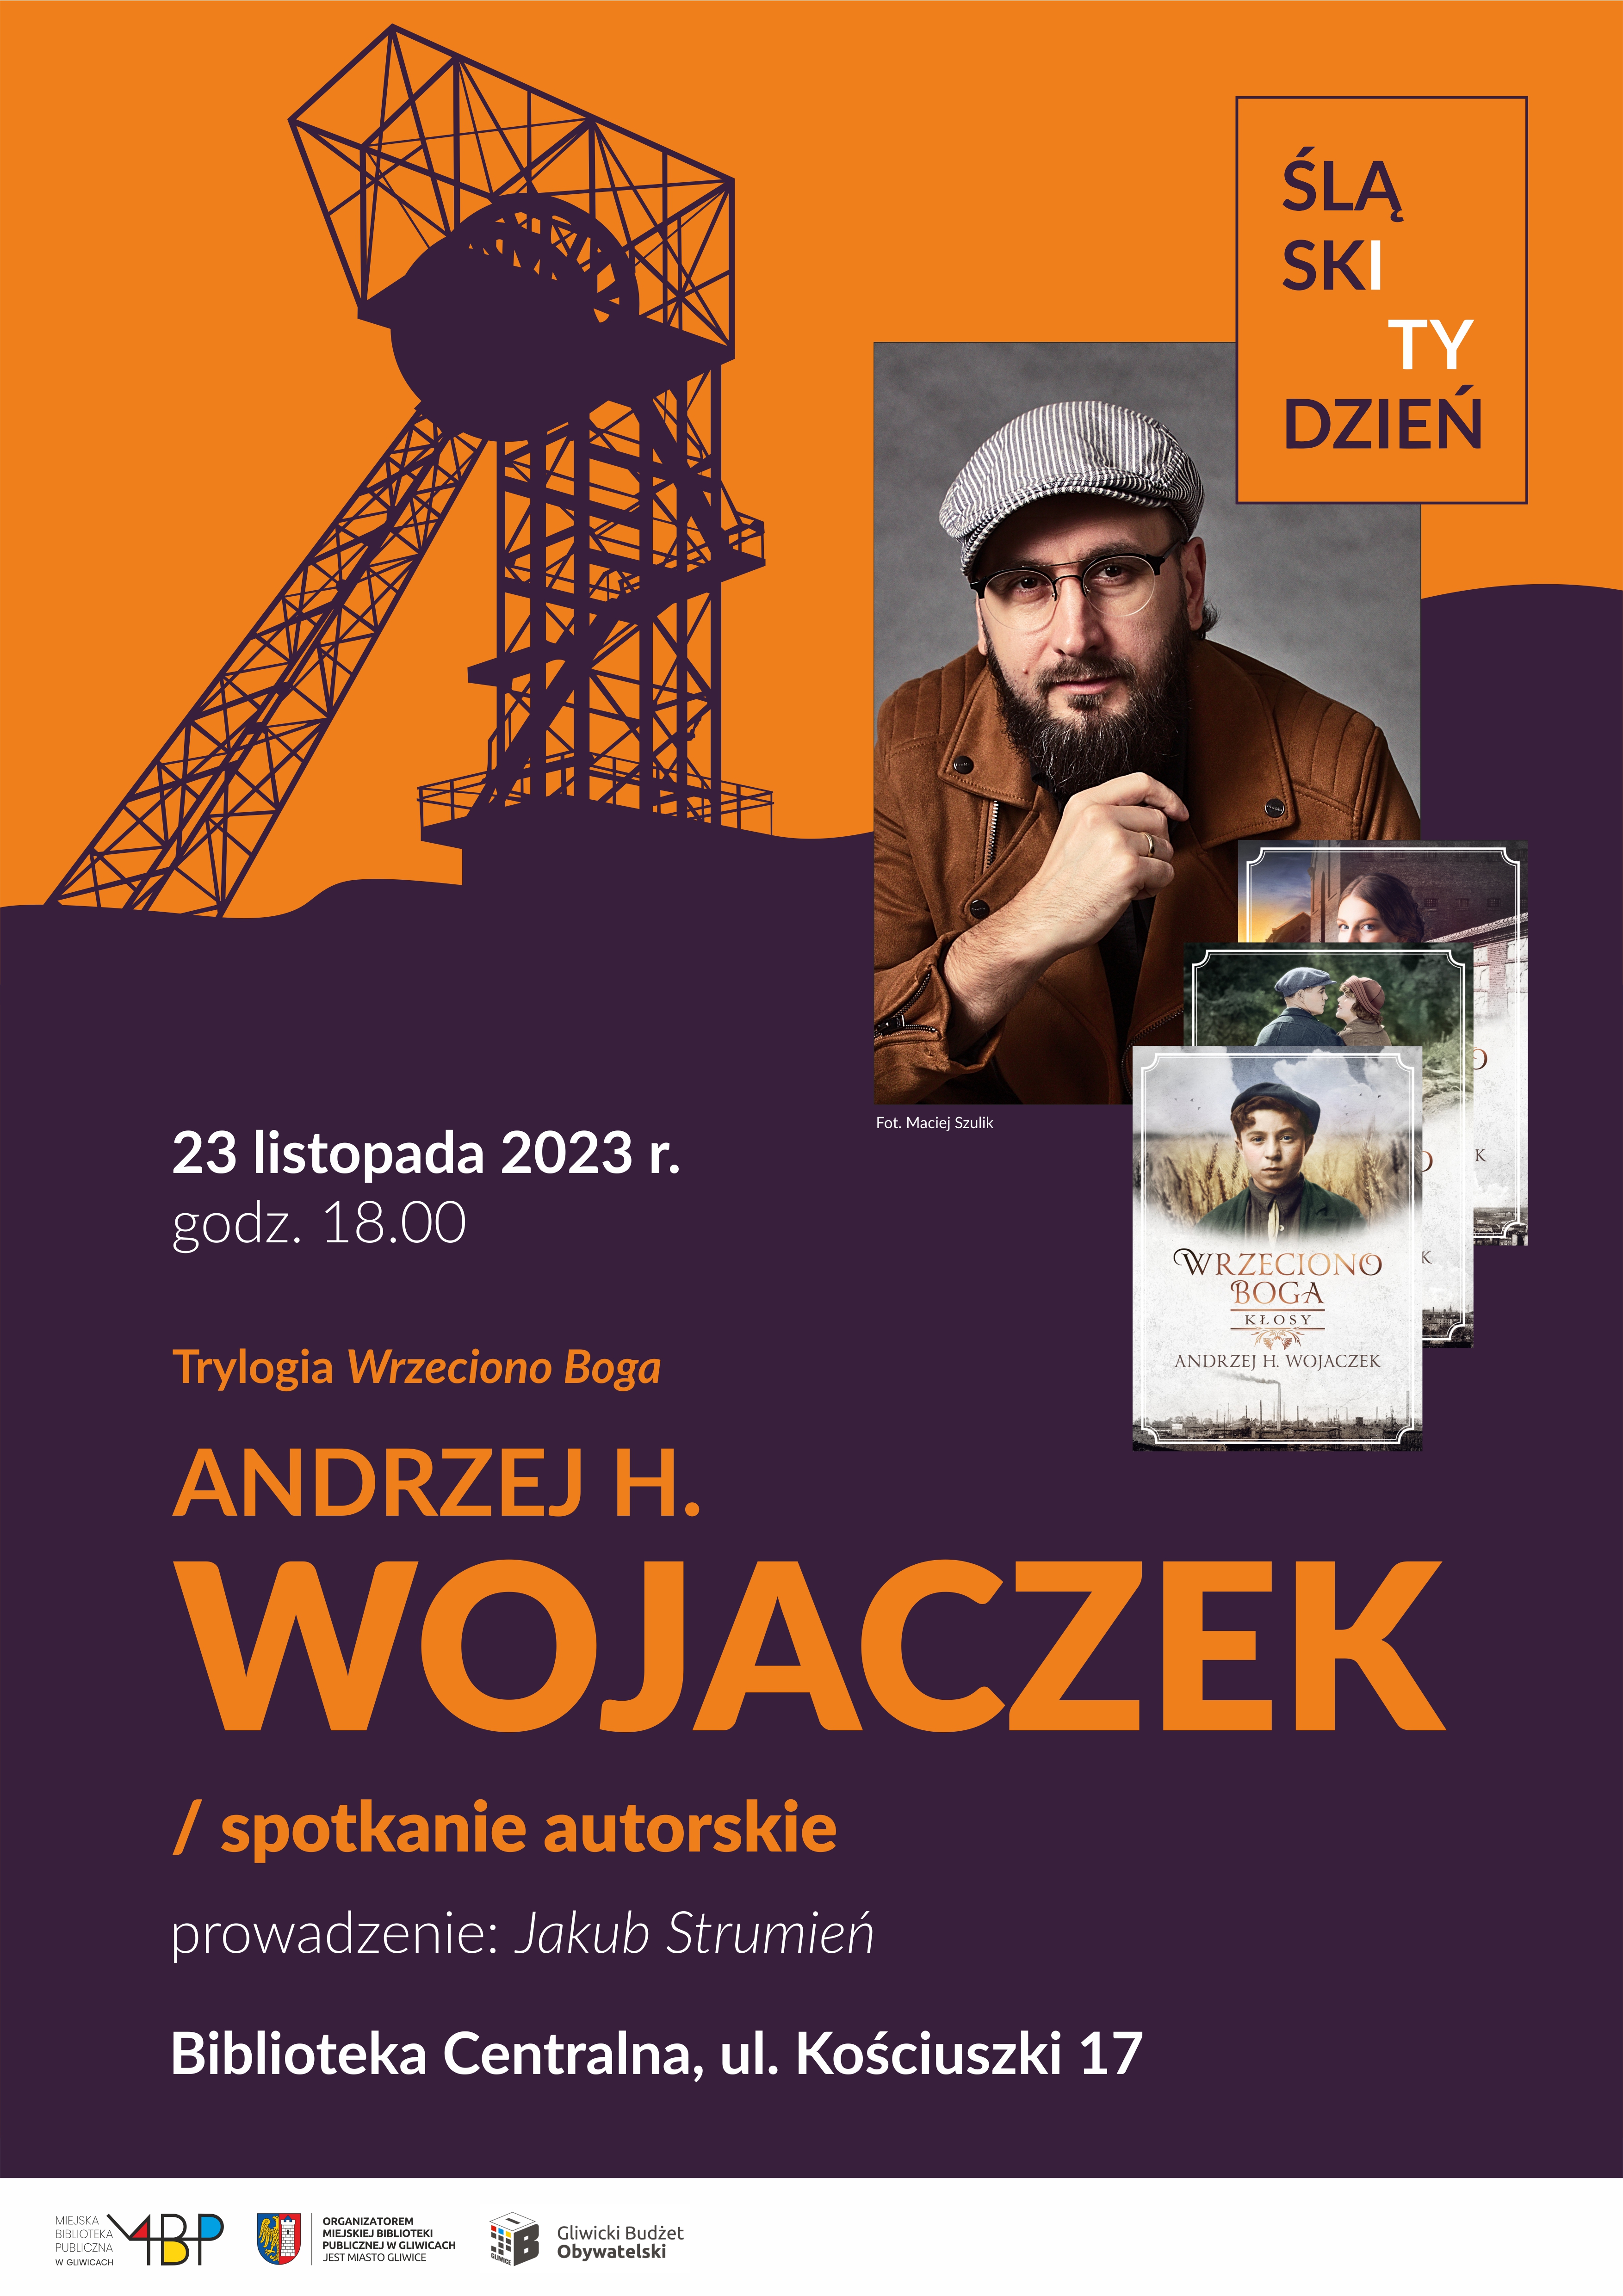 Plakat promujący spotkanie z Andrzejem H. Wojaczkiem